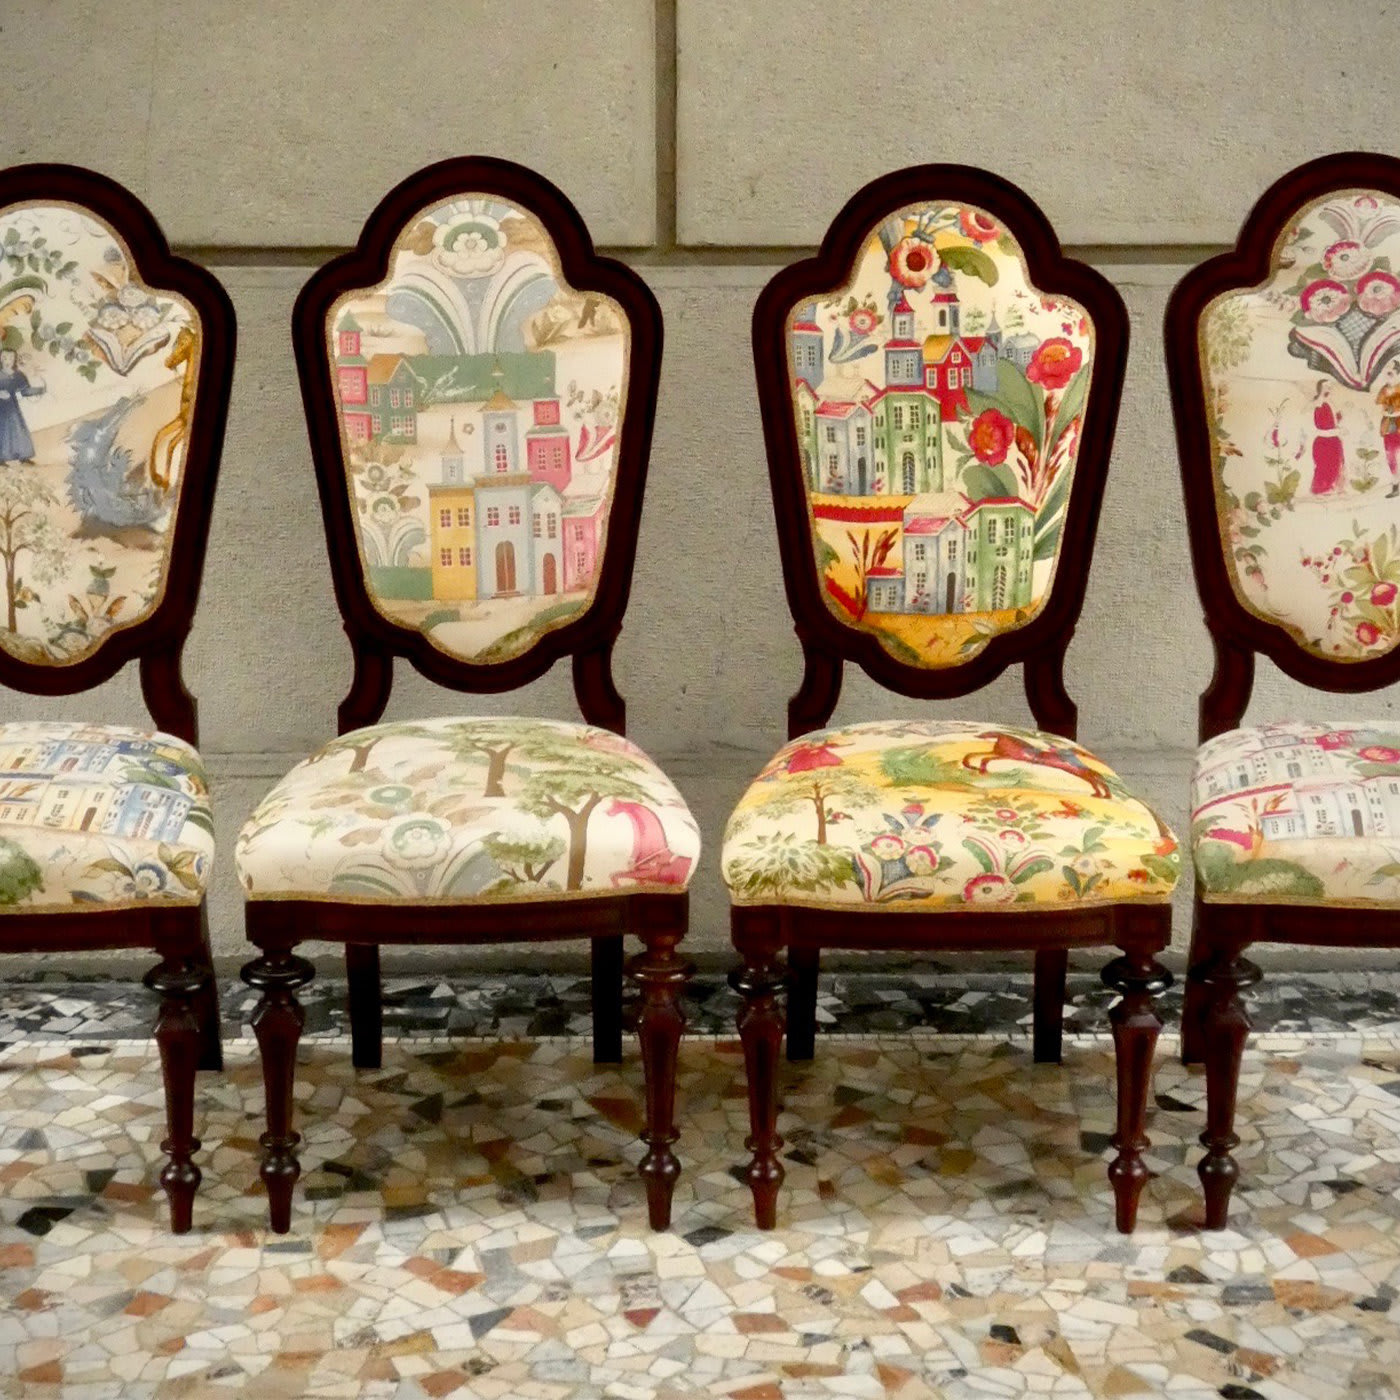 Sedute Esaurite Collection Chair #7 - Renaissance Rehab by Nicoletta Gatti